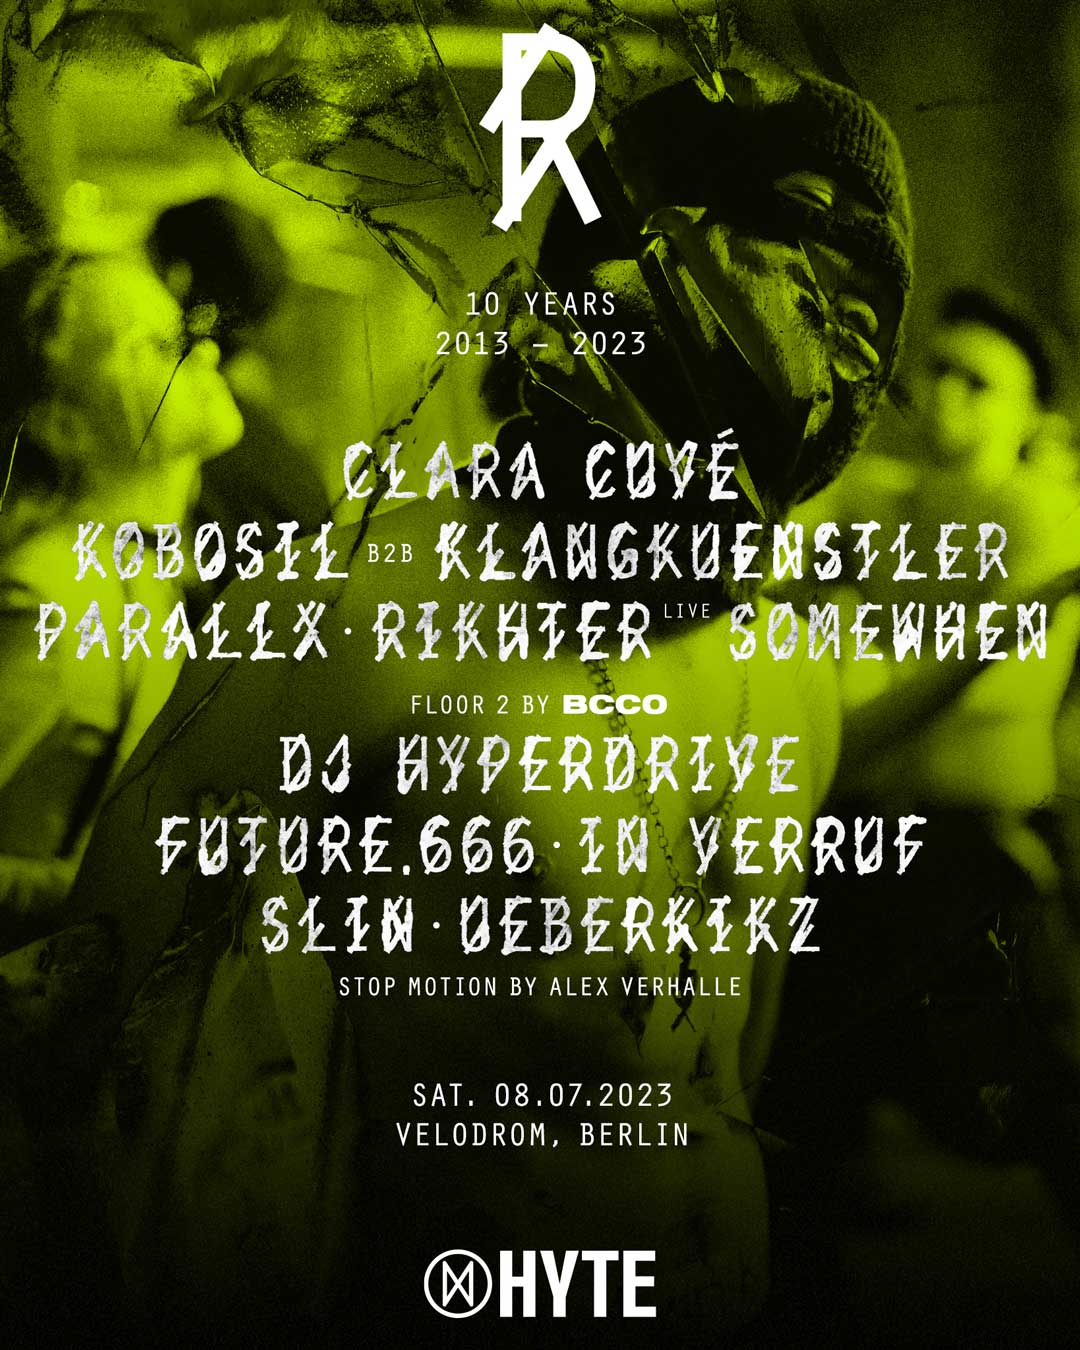 R10 x Hyte Berlin - with Clara Cuvé / Kobosil b2B Klangkünstler (4h Set World Premiere) / Parallx / Rikhter (Live) / Somewhen / Floor 2 by BCCO: / DJ Hyperdrive / Future.666 / In Verrus / Slin / Ueberkikz